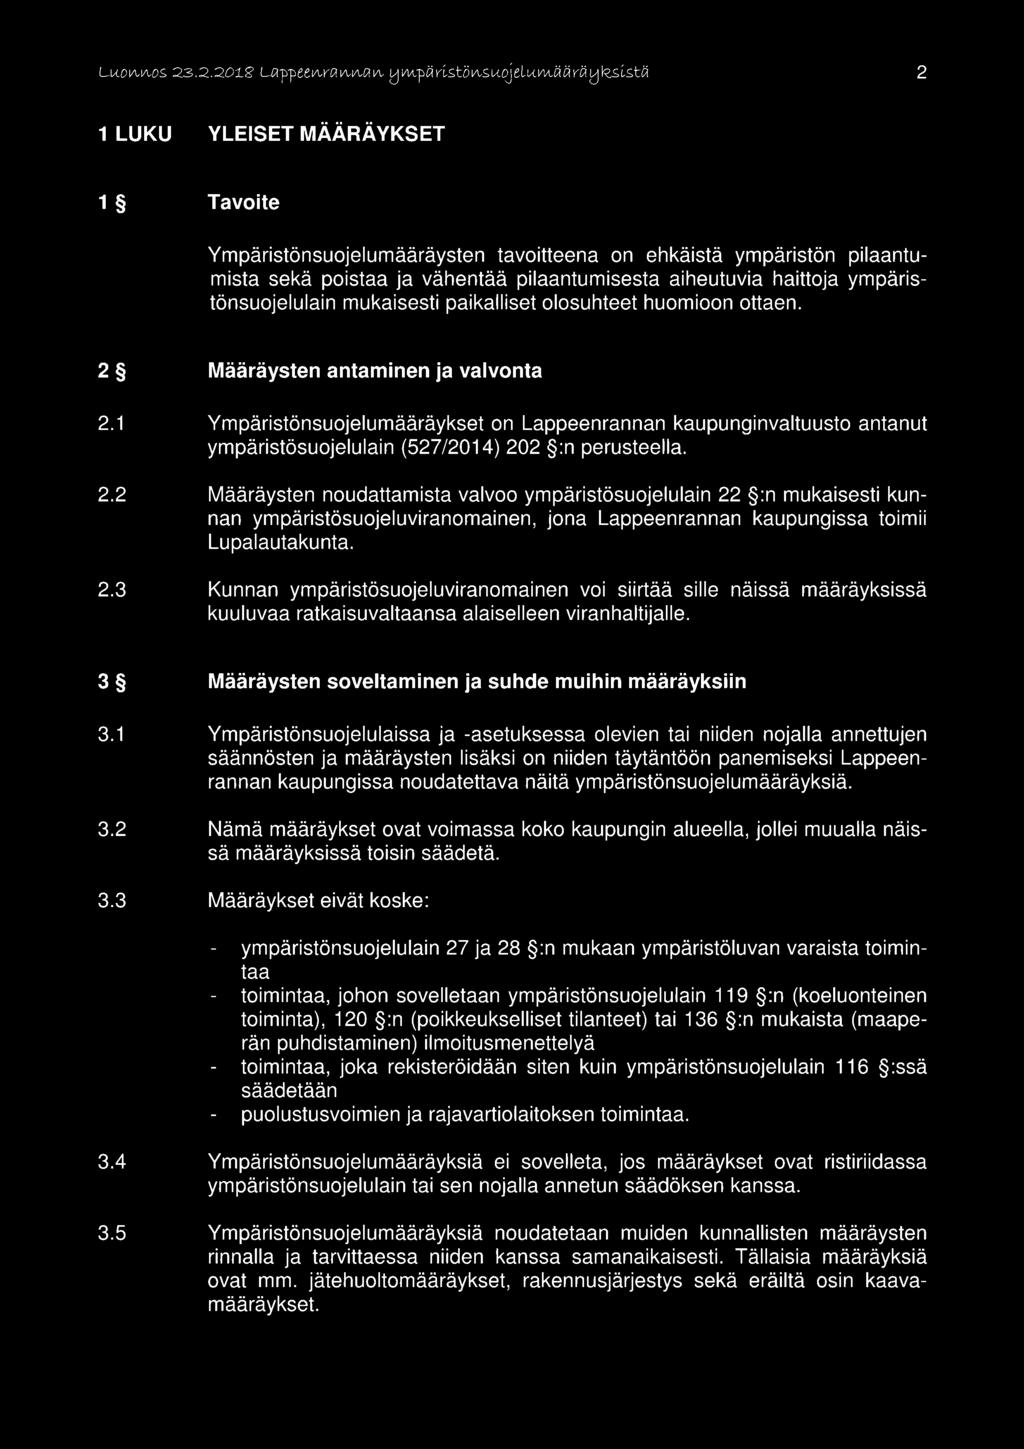 1 Ympäristönsuojelumääräykset on Lappeenrannan kaupunginvaltuusto antanut ympäristösuojelulain (527/2014) 20